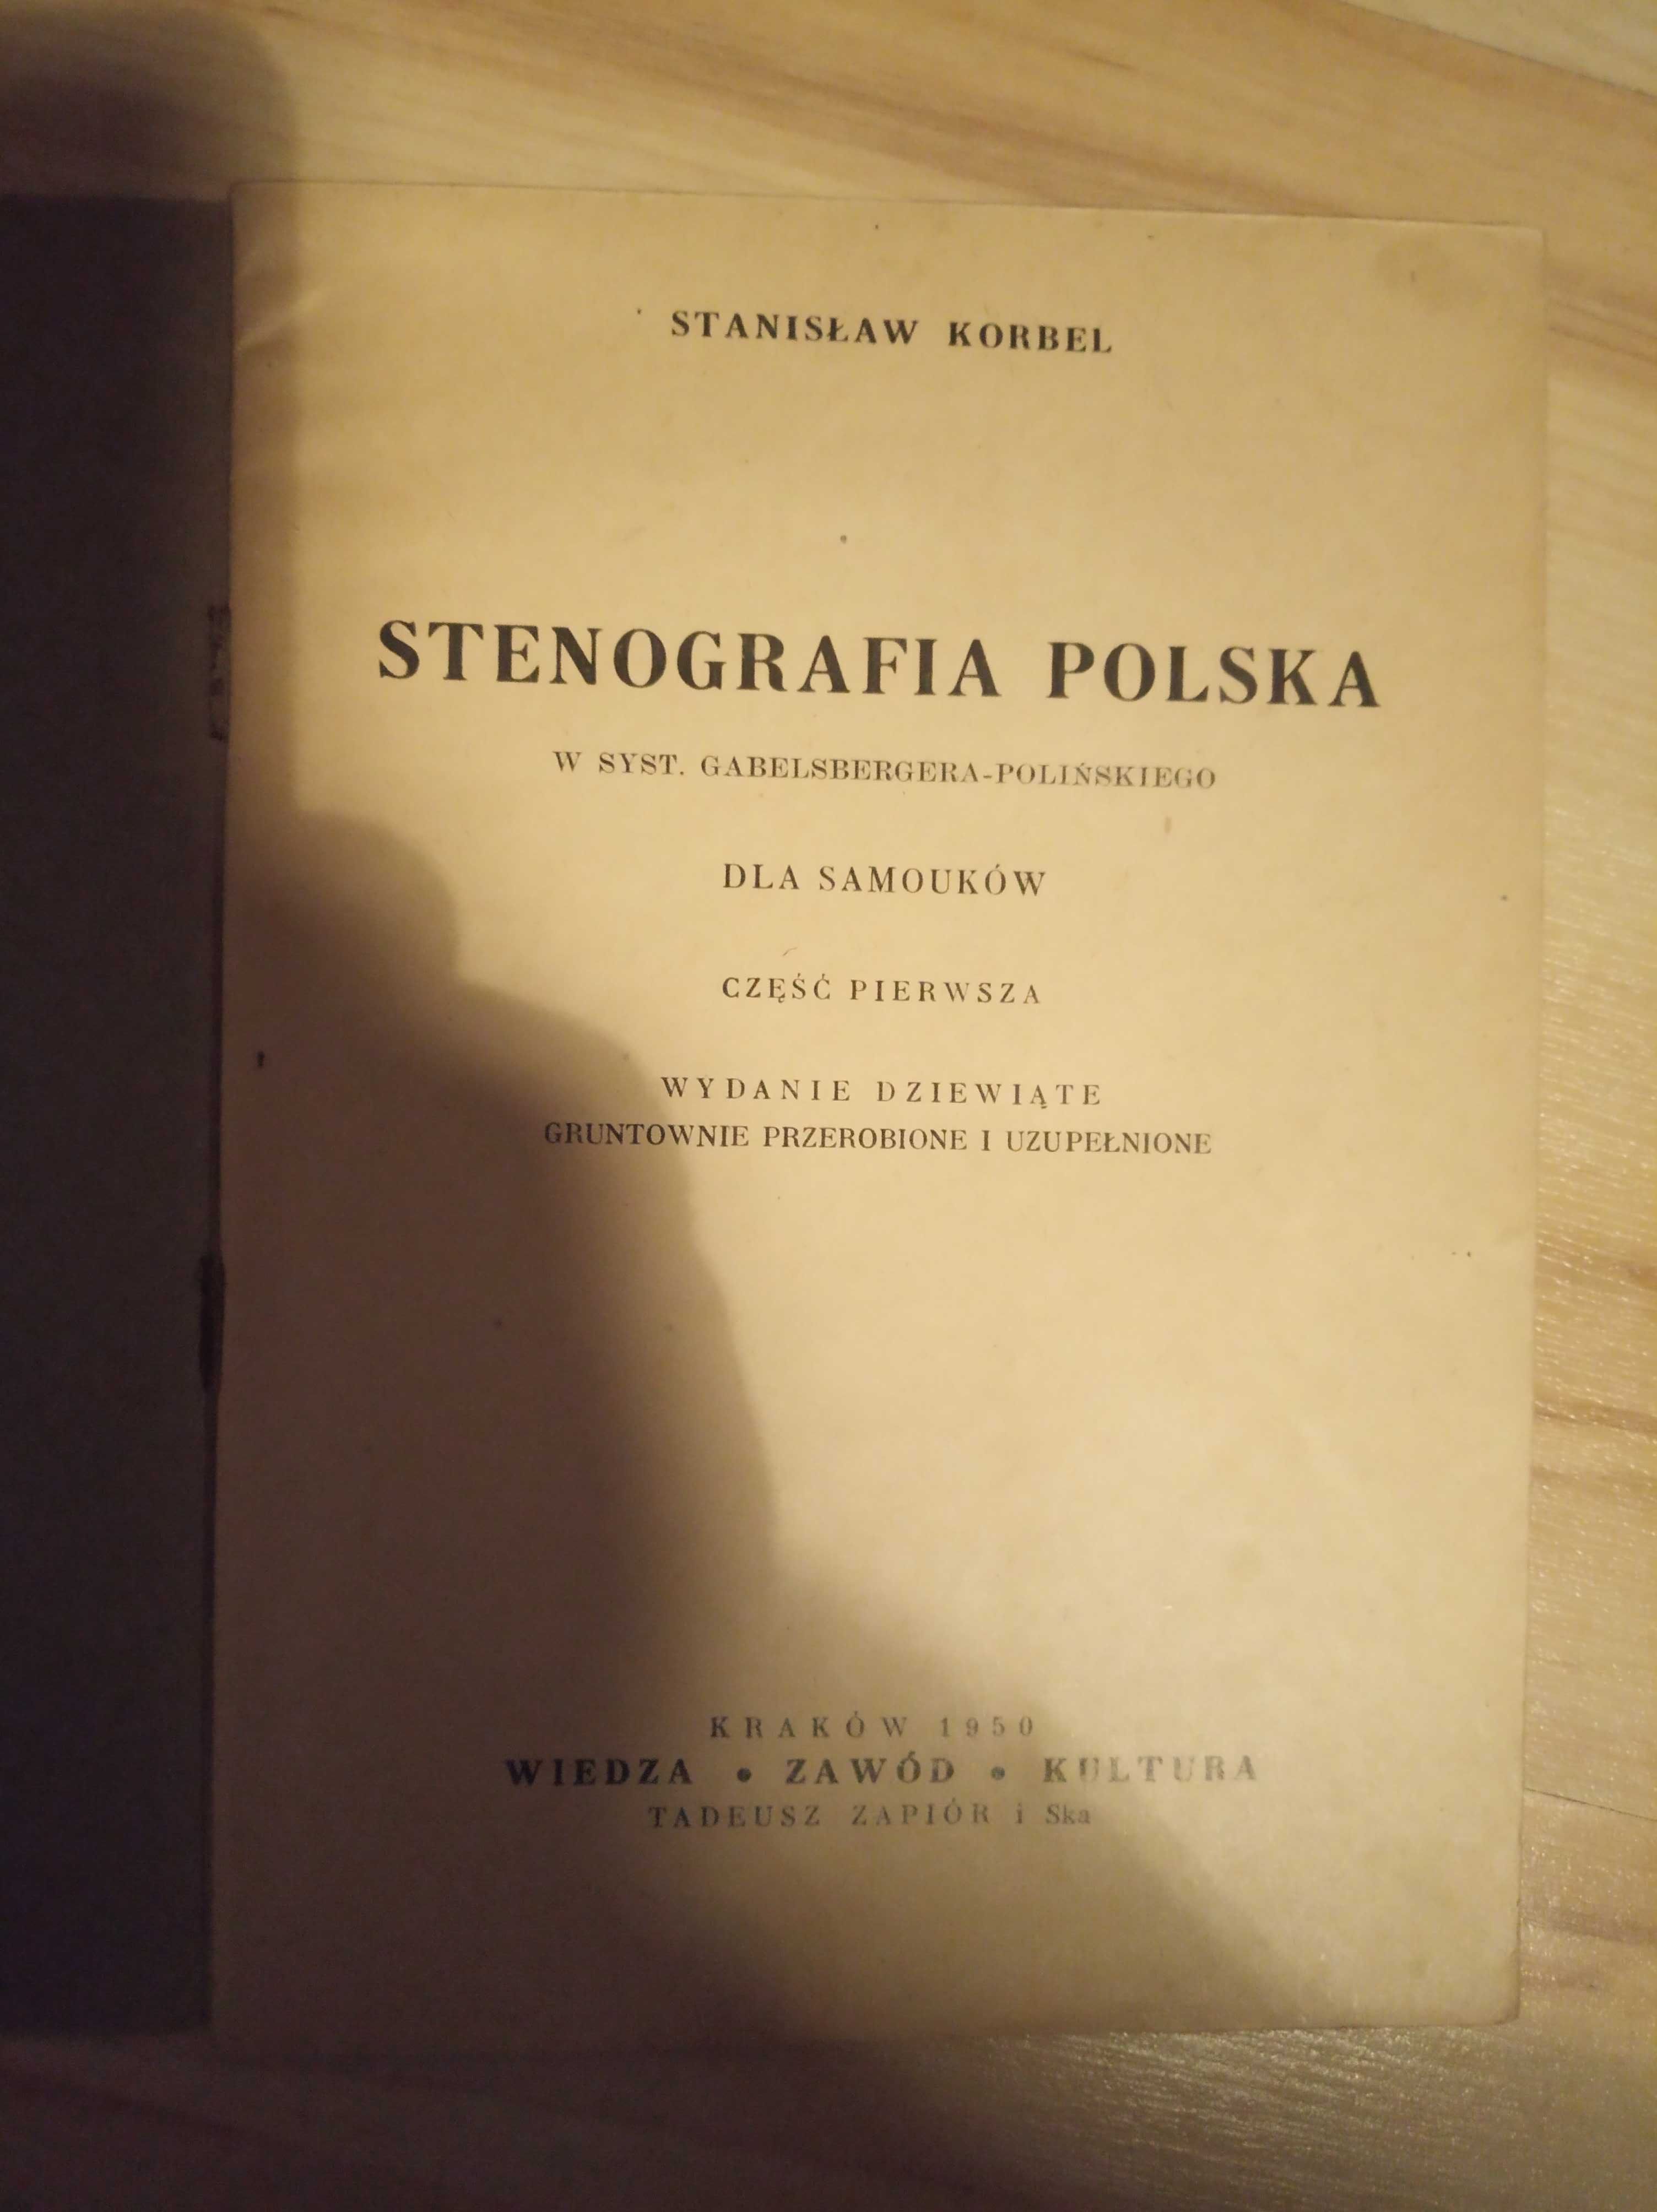 Stenografia polska Korbel 1950